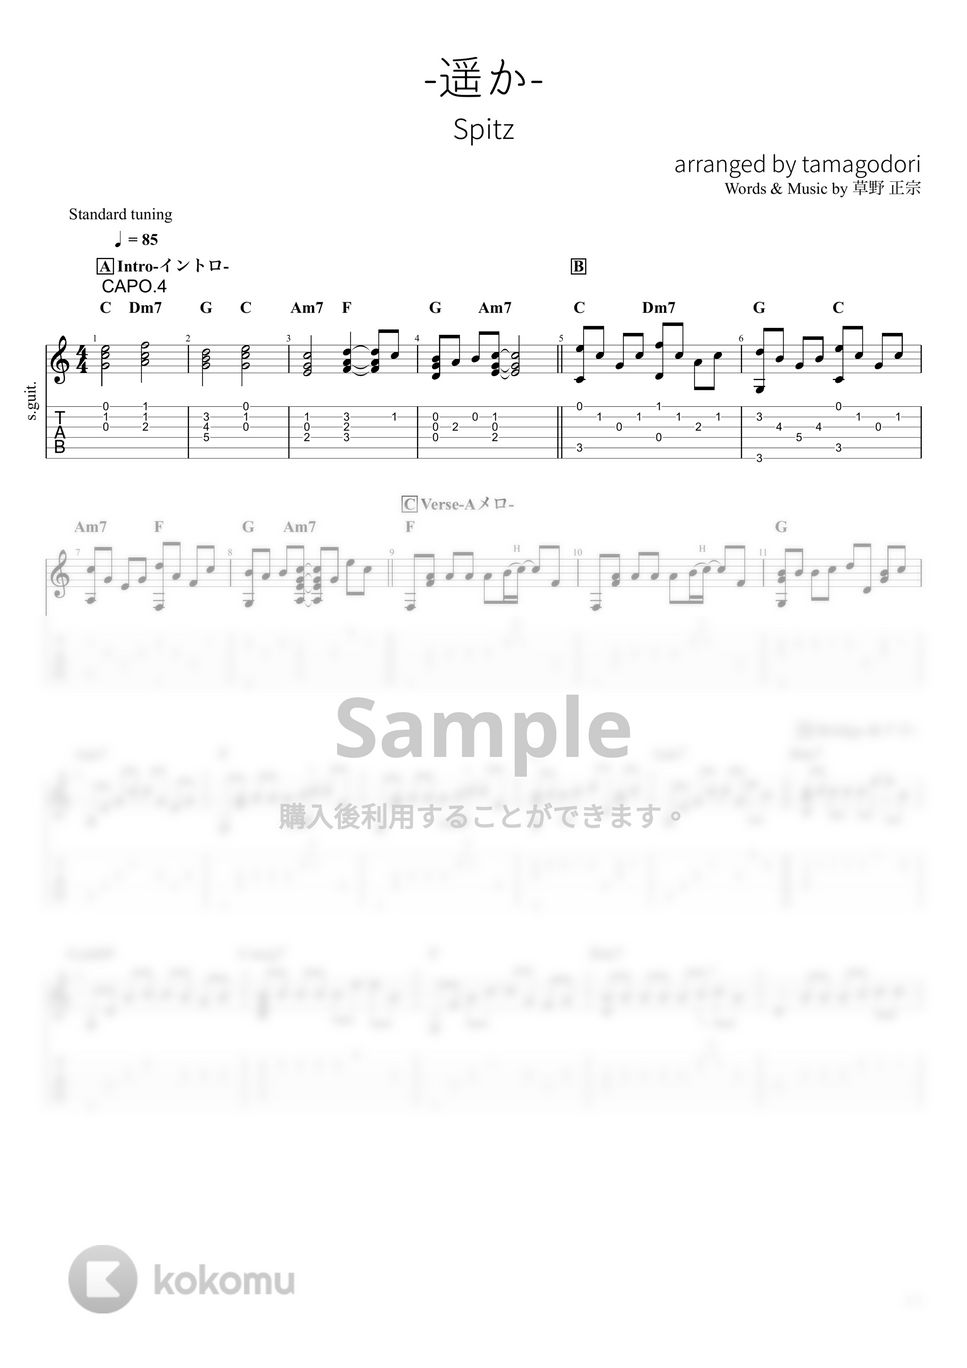 スピッツ - 遥か (ソロギター) by たまごどり